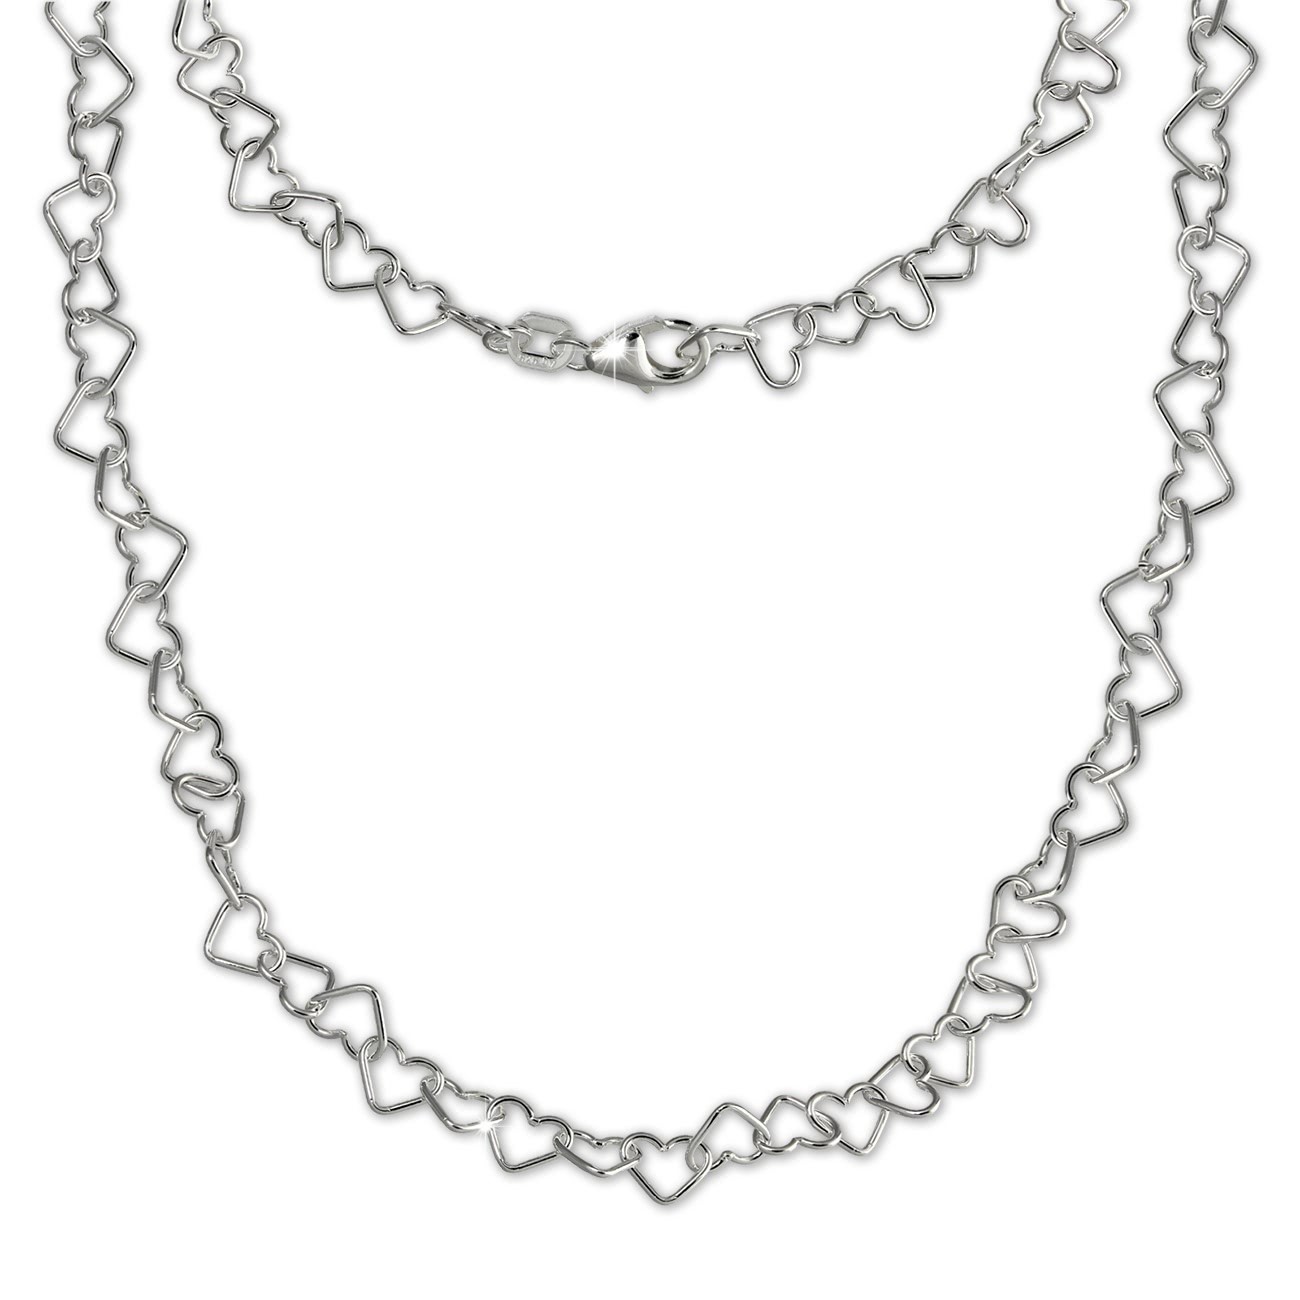 SilberDream Damen Kette Herzchen 925er Silber 45cm Damen Halskette SDK27546J